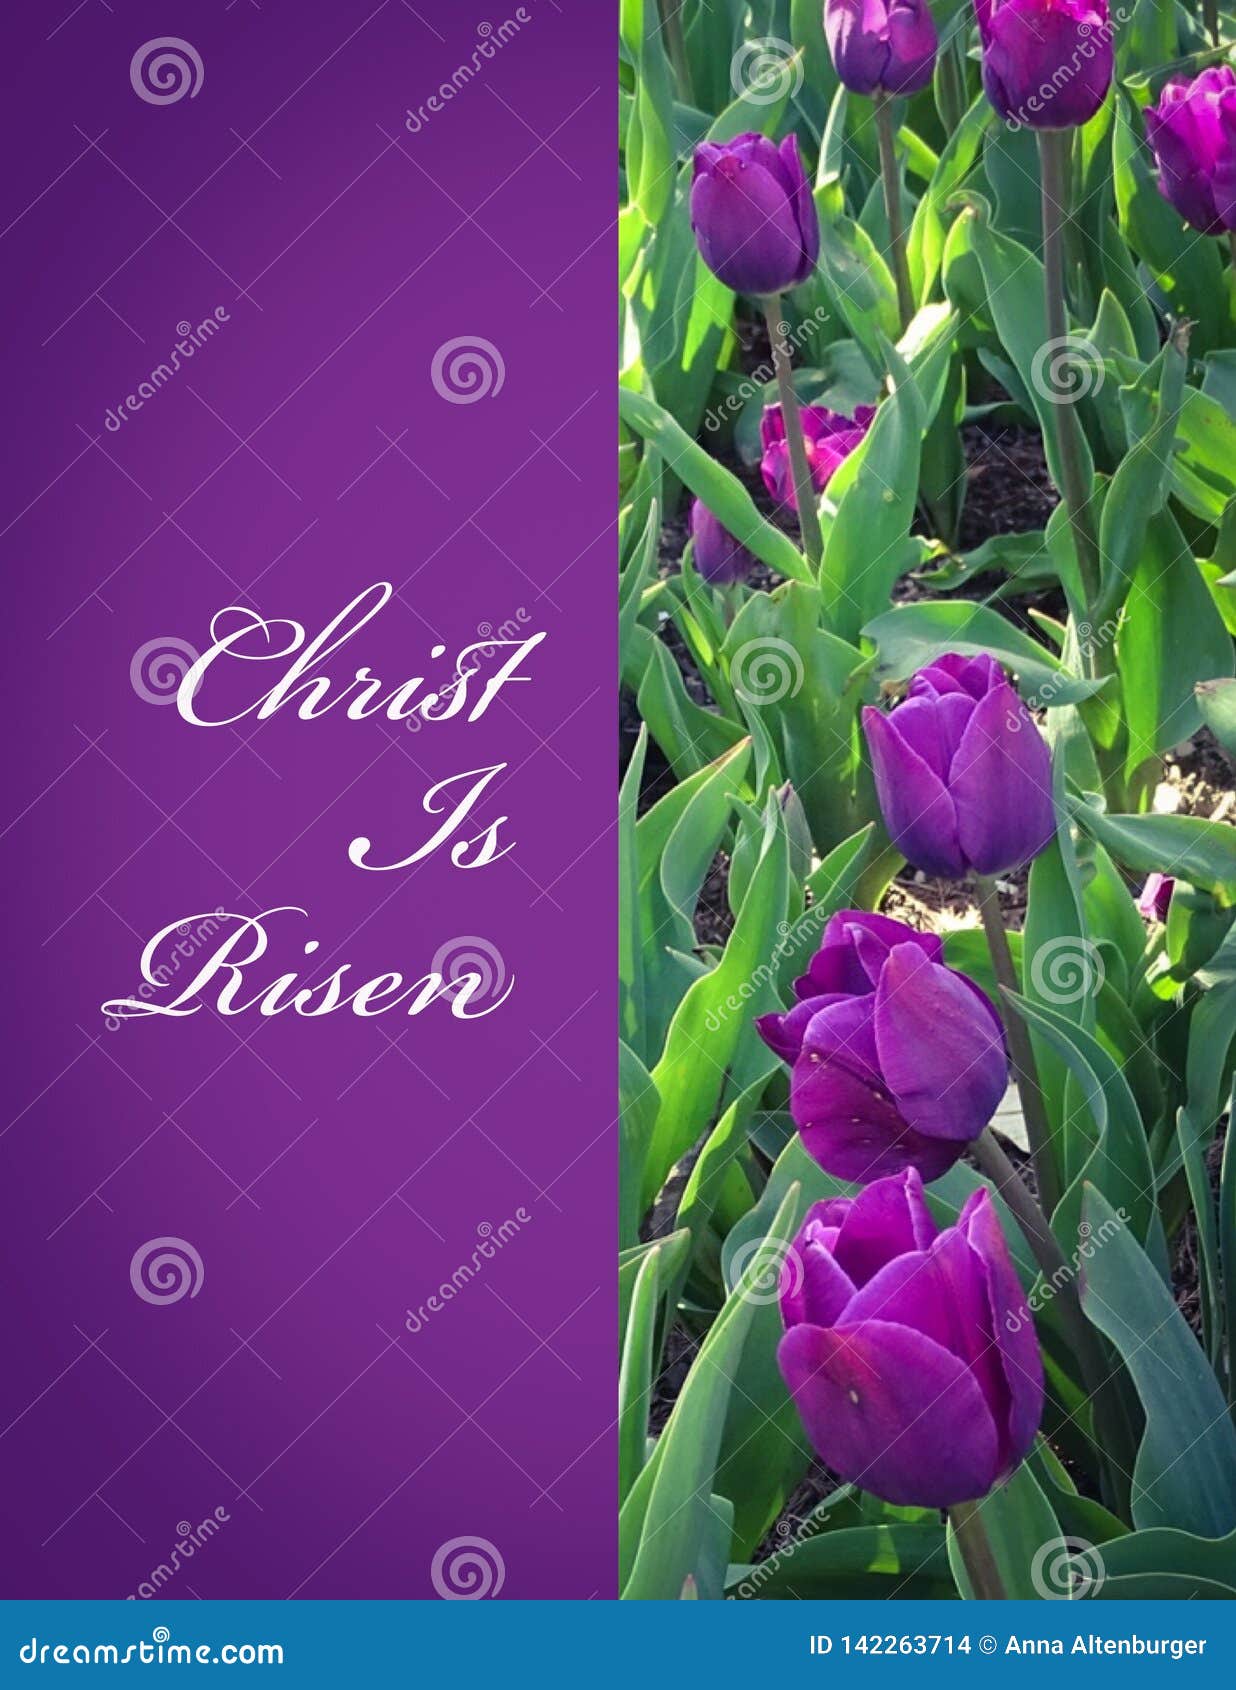 Christ wzrastający. Chrystus jest Wzrastającym tekstem z purpurowymi tulipanami